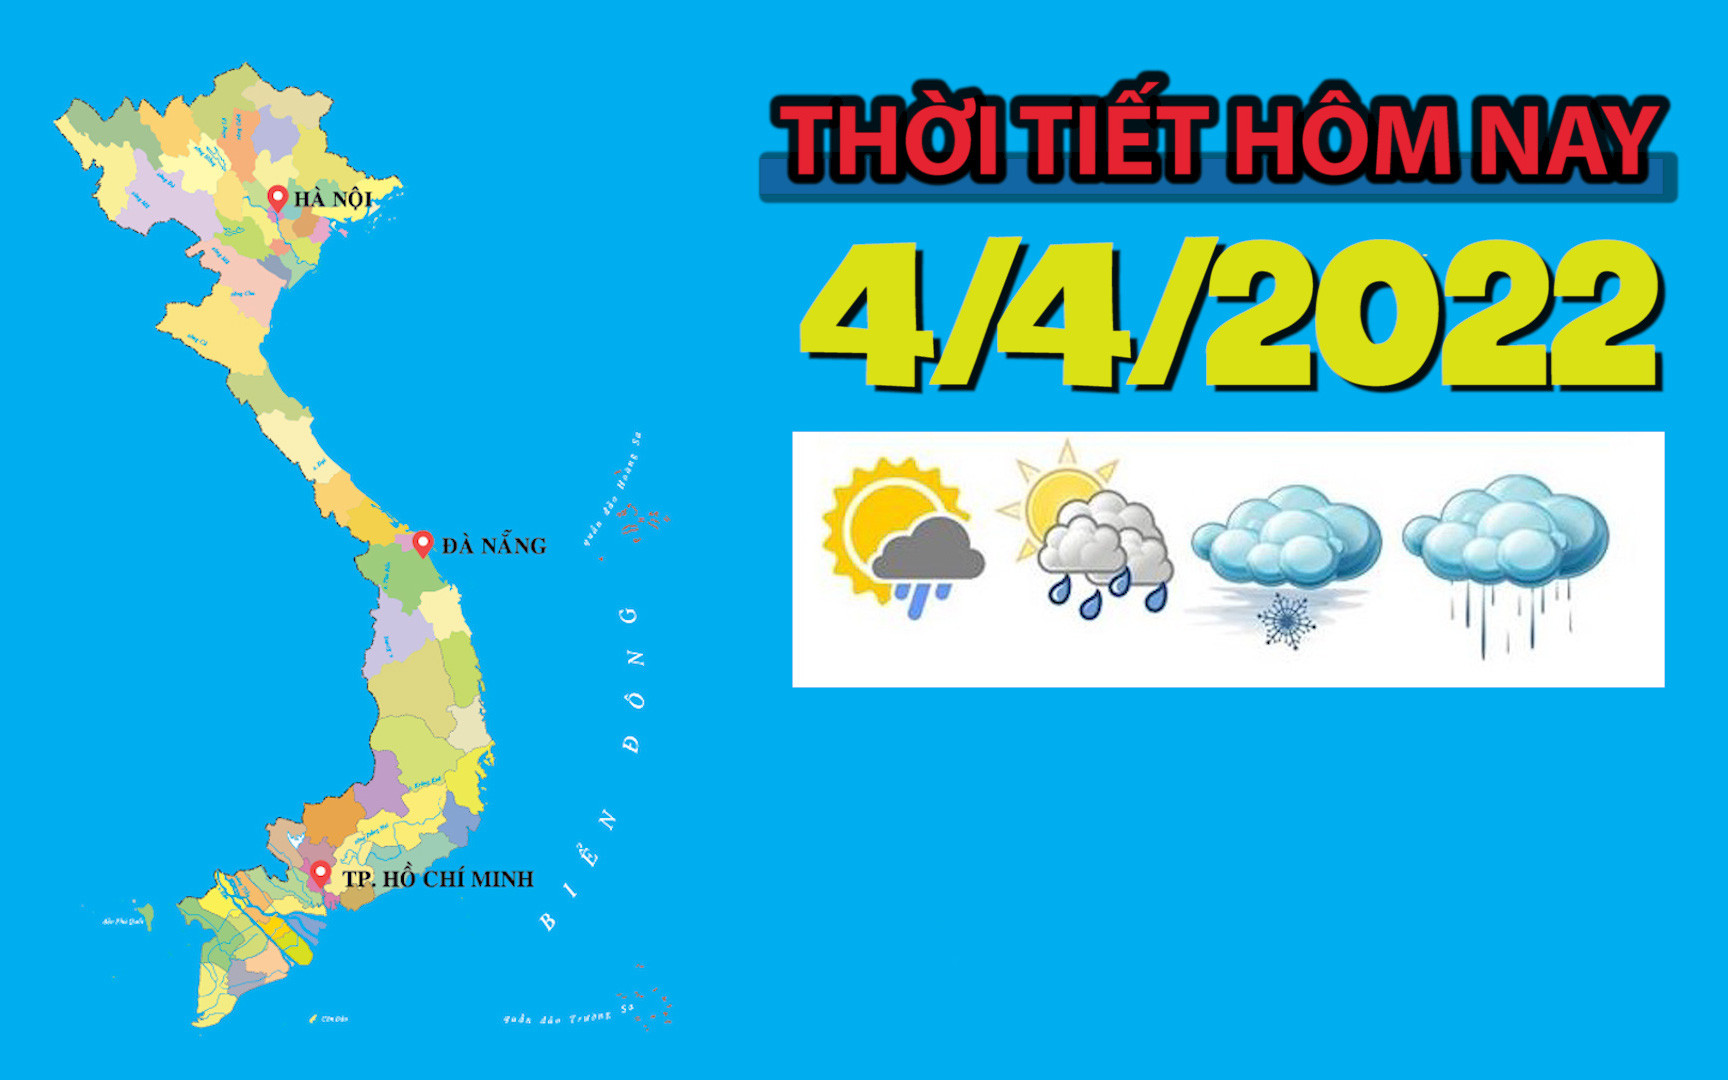 Thời tiết hôm nay 4/4/2022: Hà Nội ngày nắng, nhưng nhiệt độ thấp nhất vẫn chỉ ở mức 15 độ C